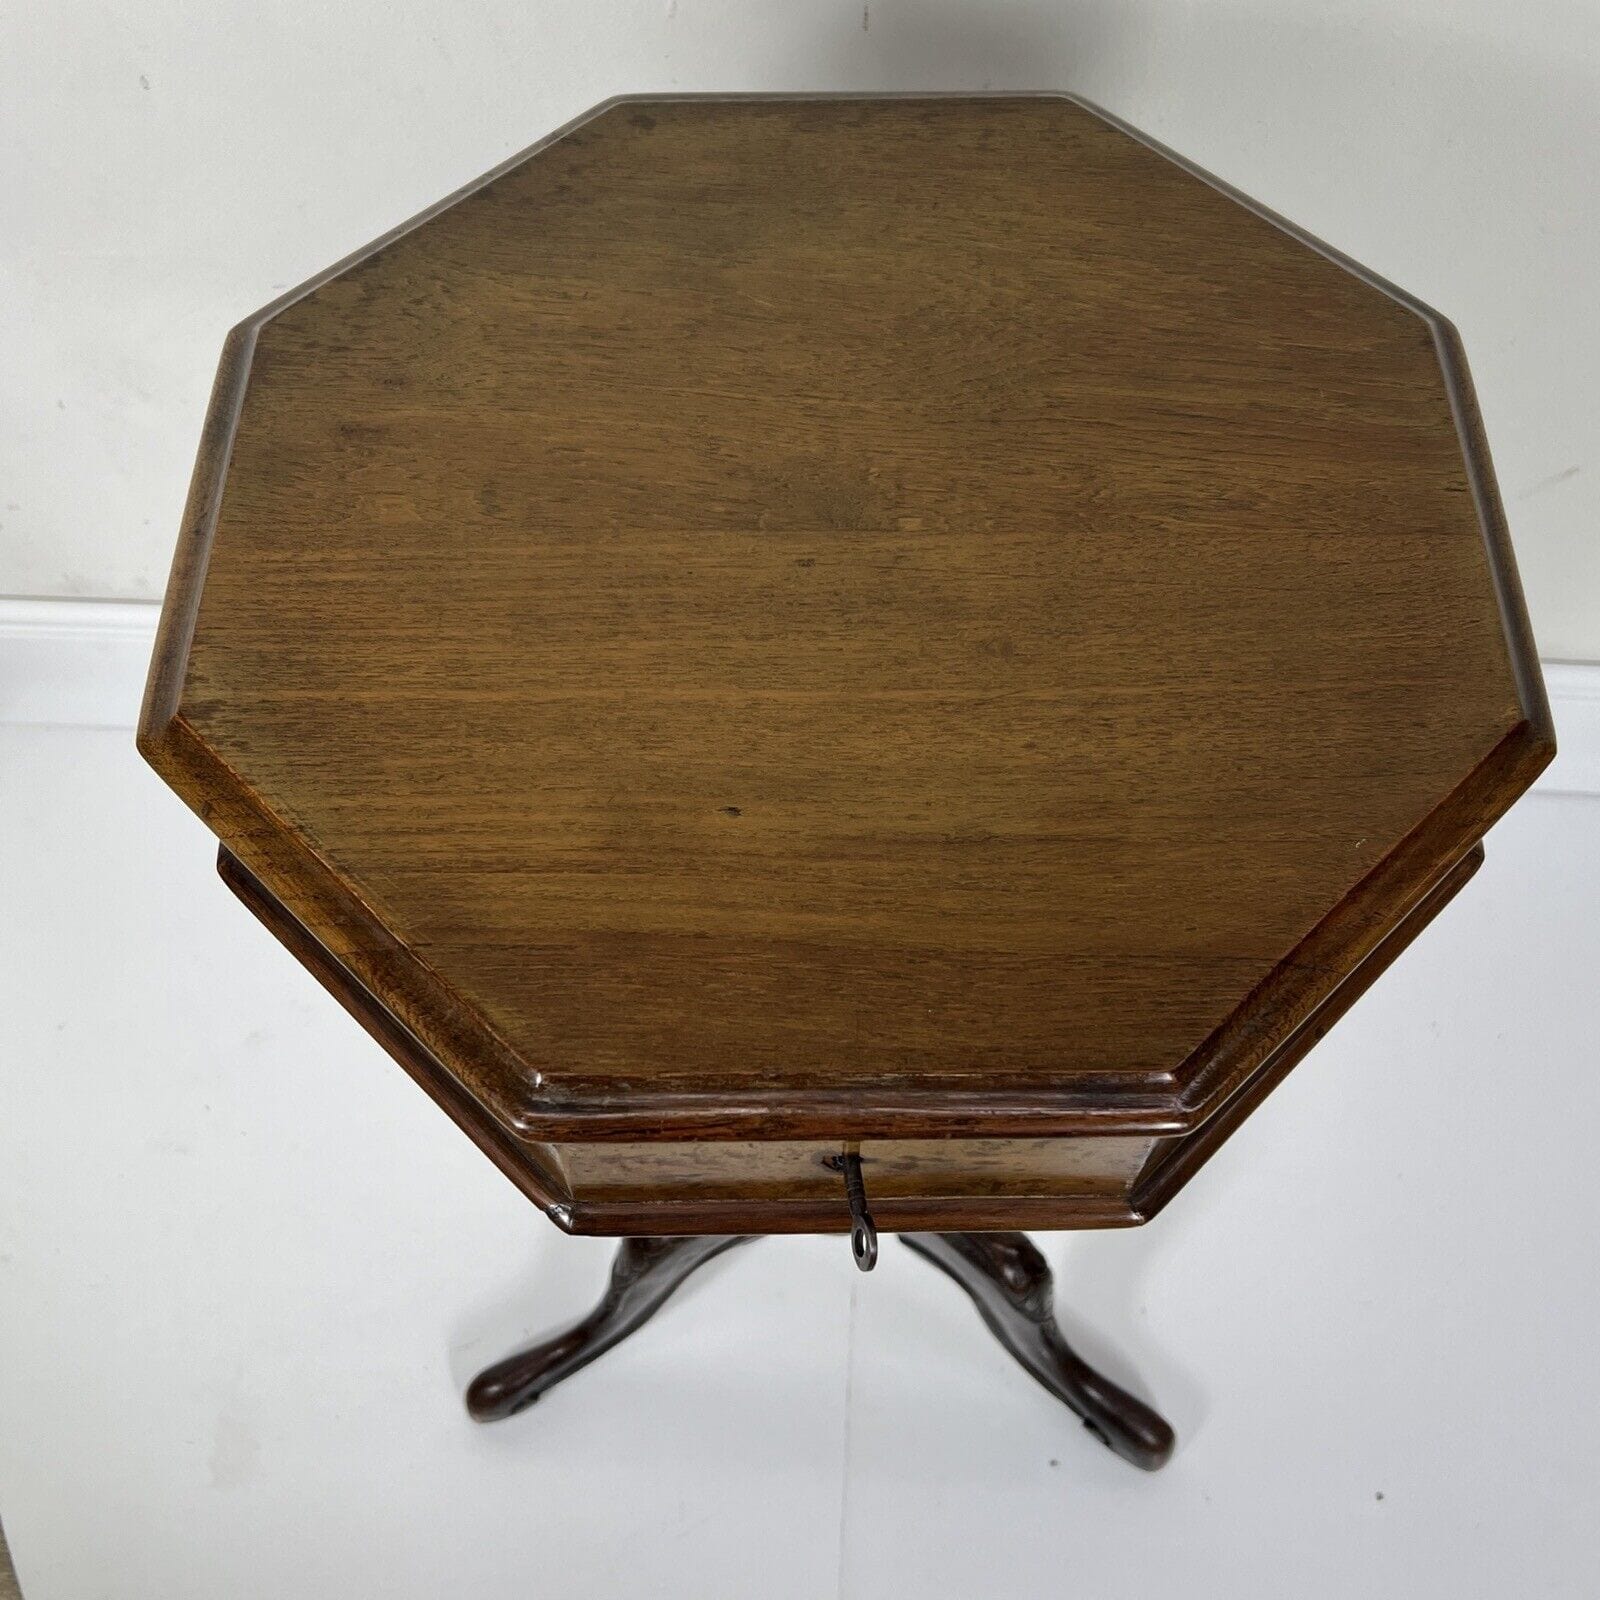 Antico tavolino da lavoro per cucito porta ricamo inglese mobile d'epoca 800 Categoria  Tavoli - tavolinetti